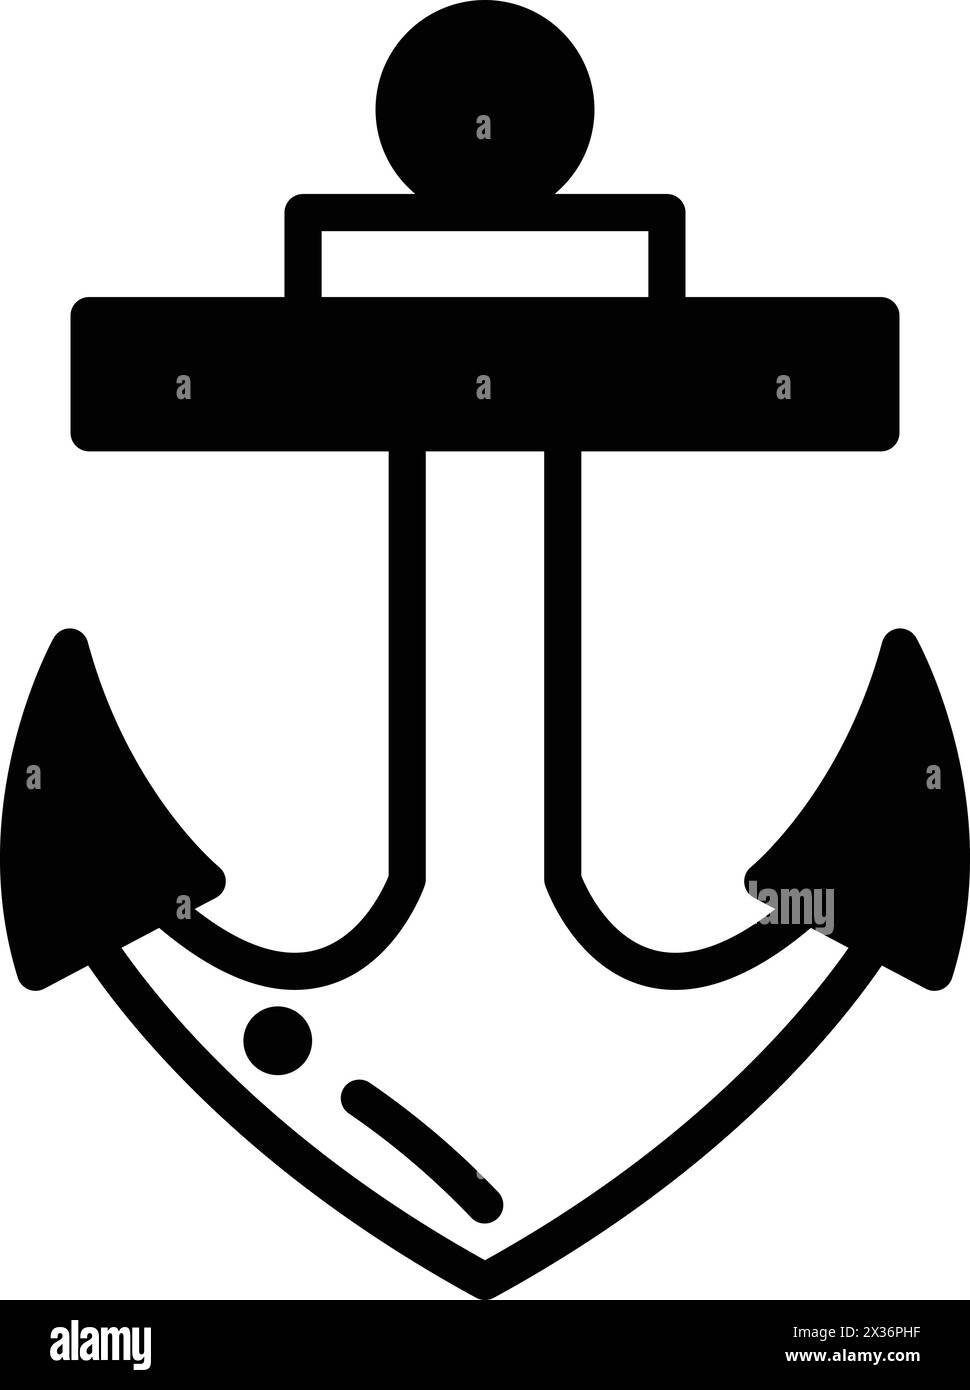 Ein schwarz-weißer Anker mit zwei Pfeilen nach oben. Der Anker ist ein Symbol für Stärke und Stabilität Stock Vektor